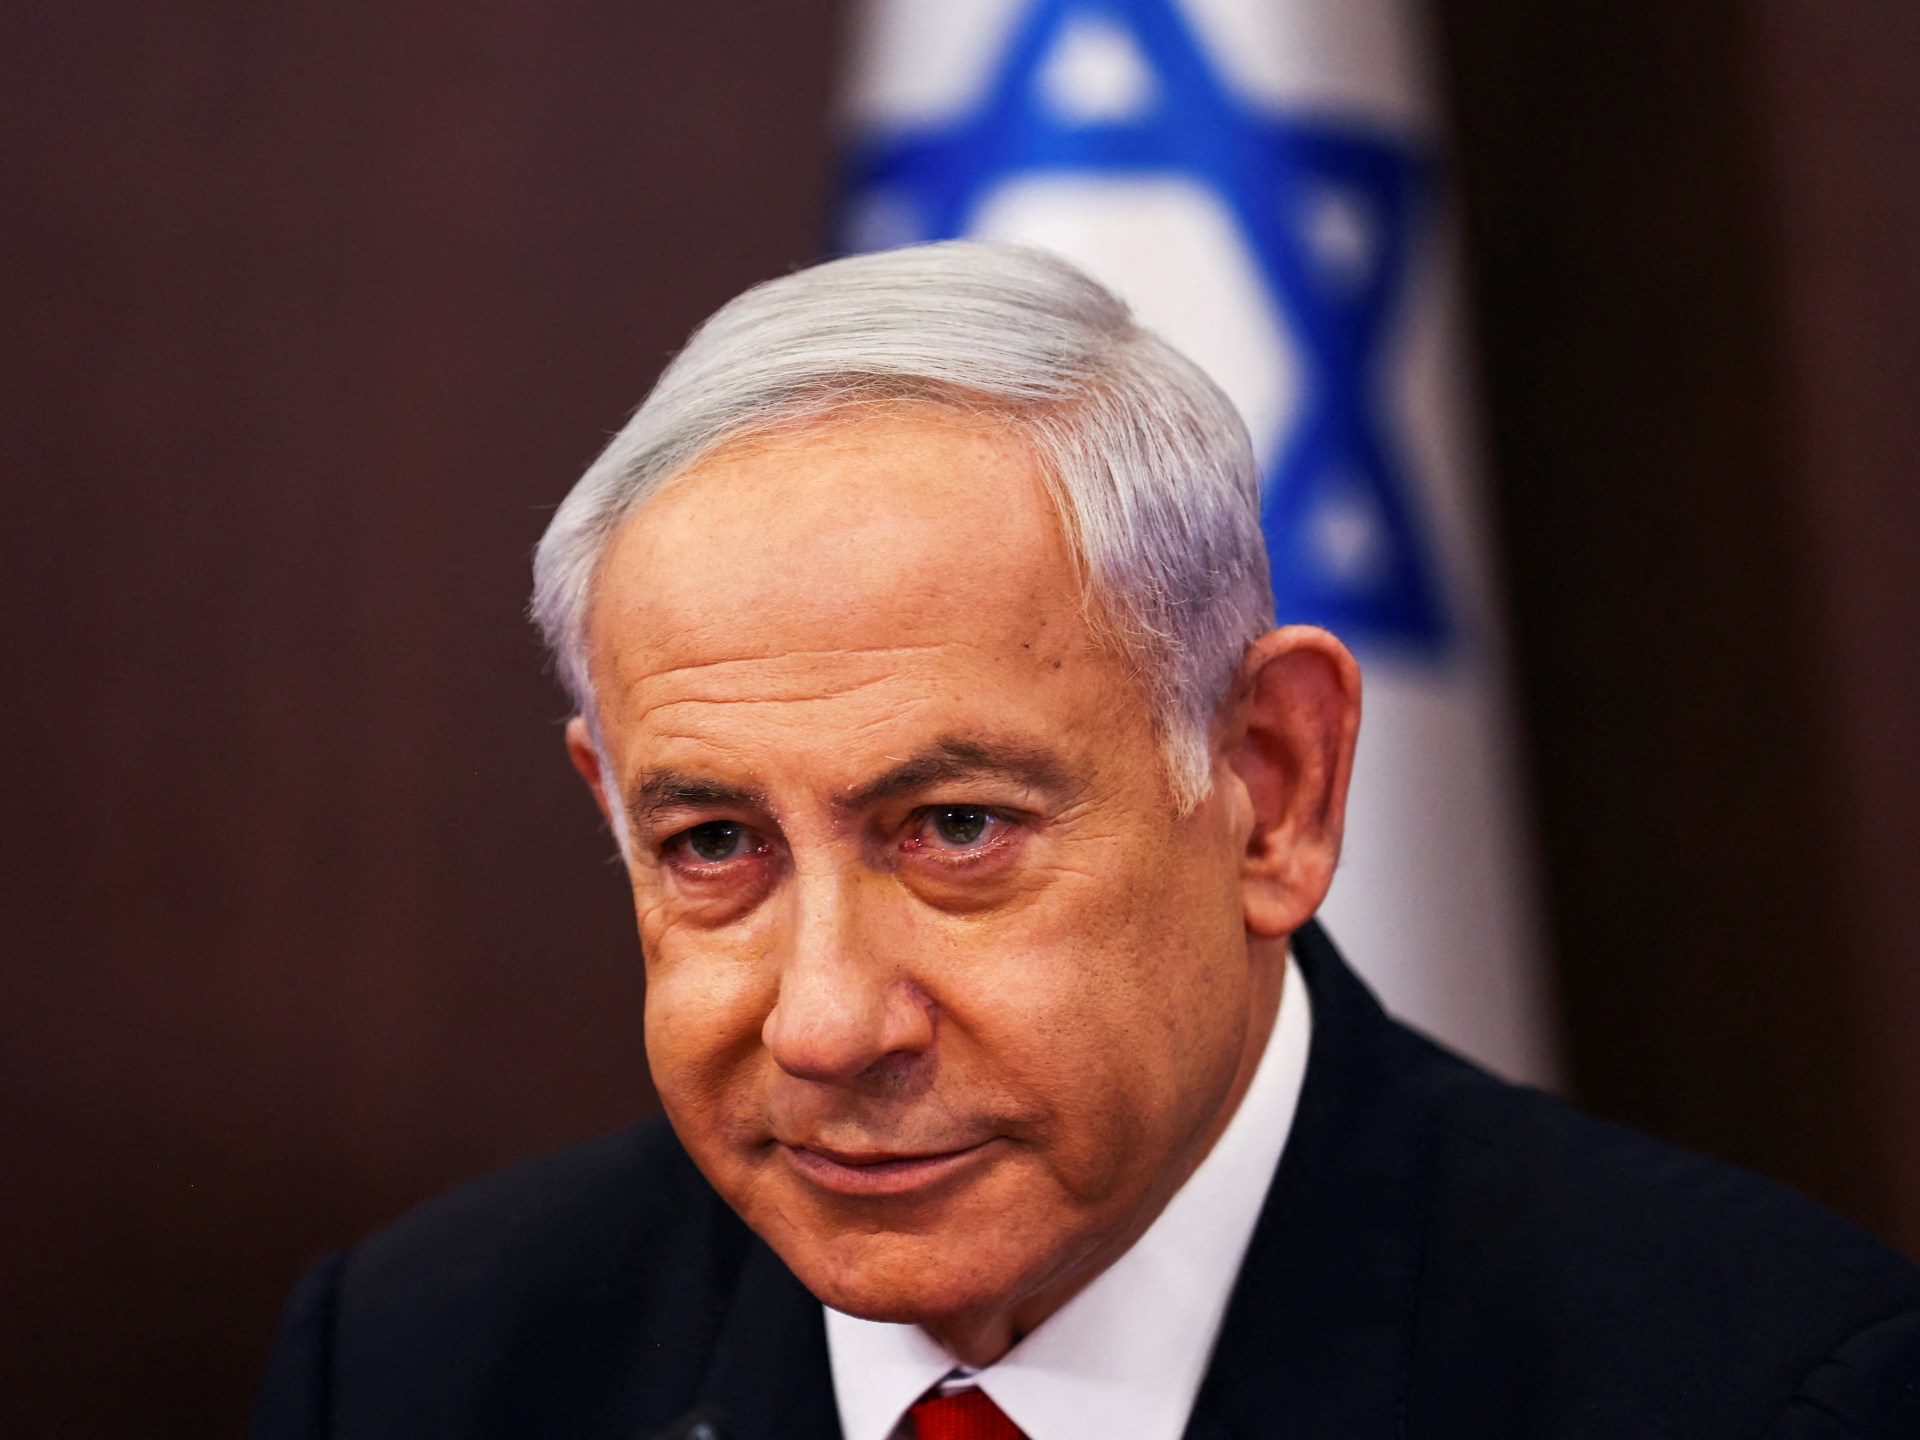 سفير أميركا السابق في إسرائيل: حان الوقت لاستقالة نتنياهو | أخبار – البوكس نيوز